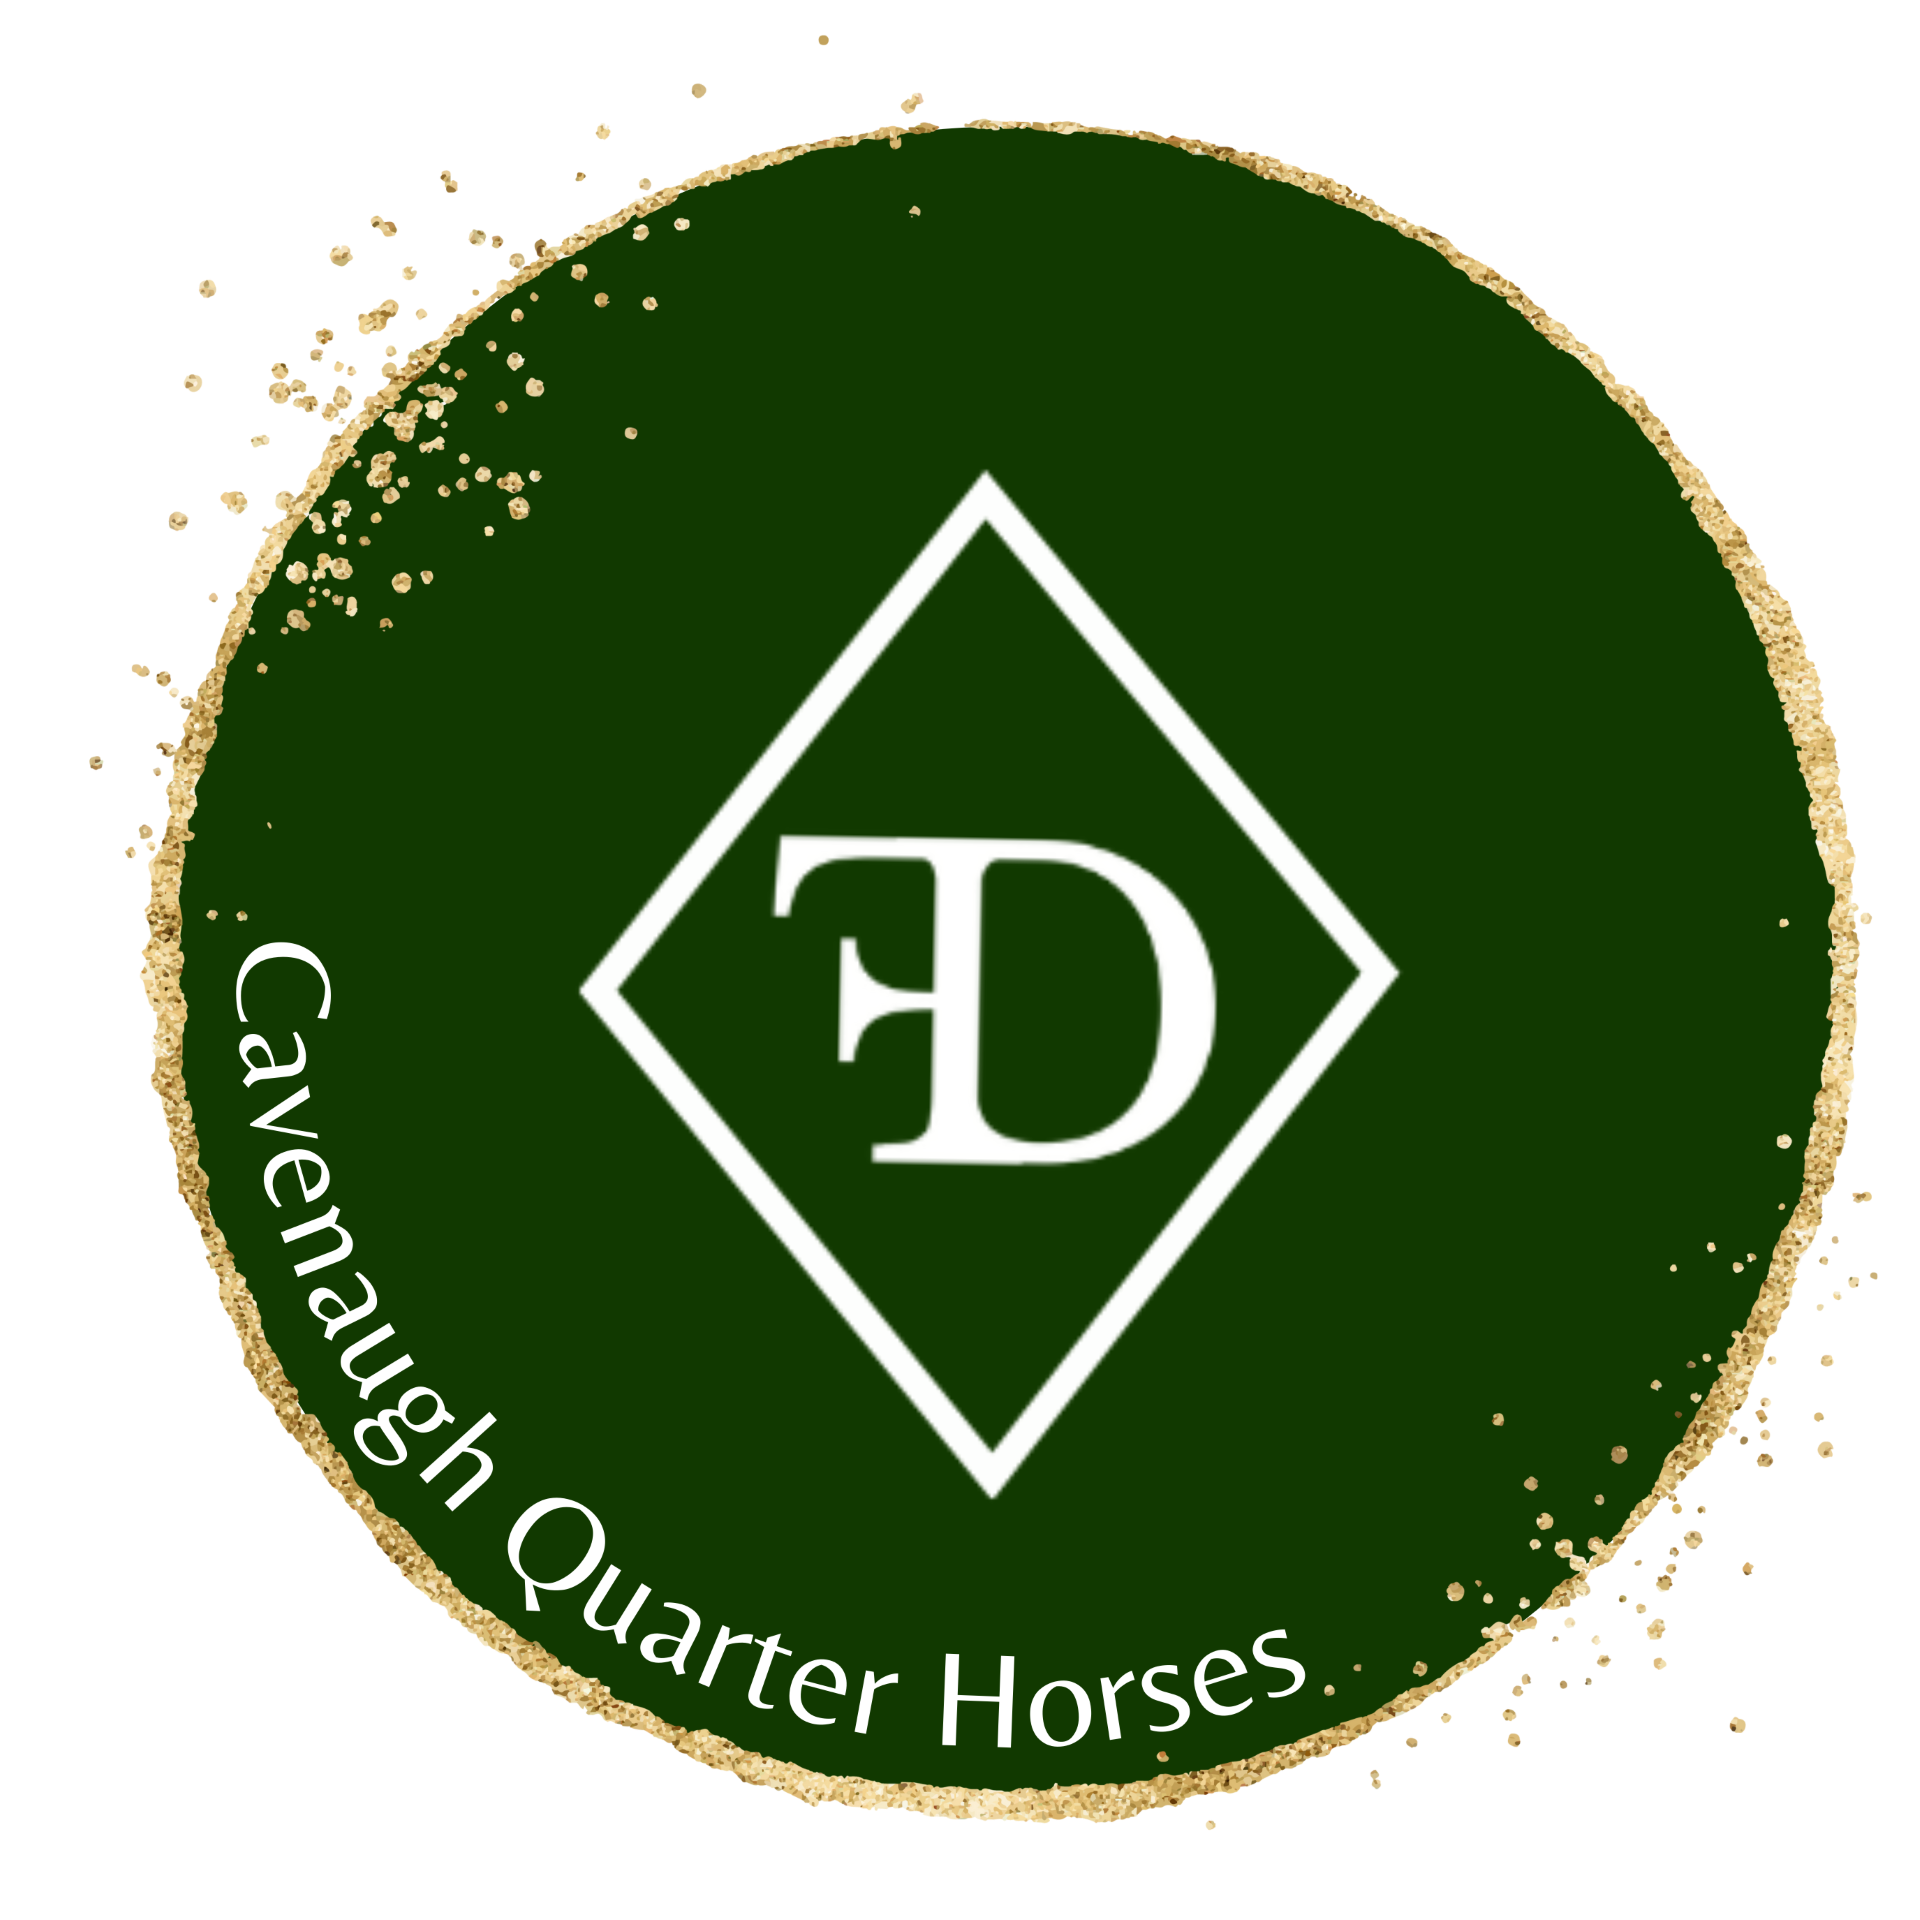 Cavenaugh Quarter Horses - The Diamond Classic